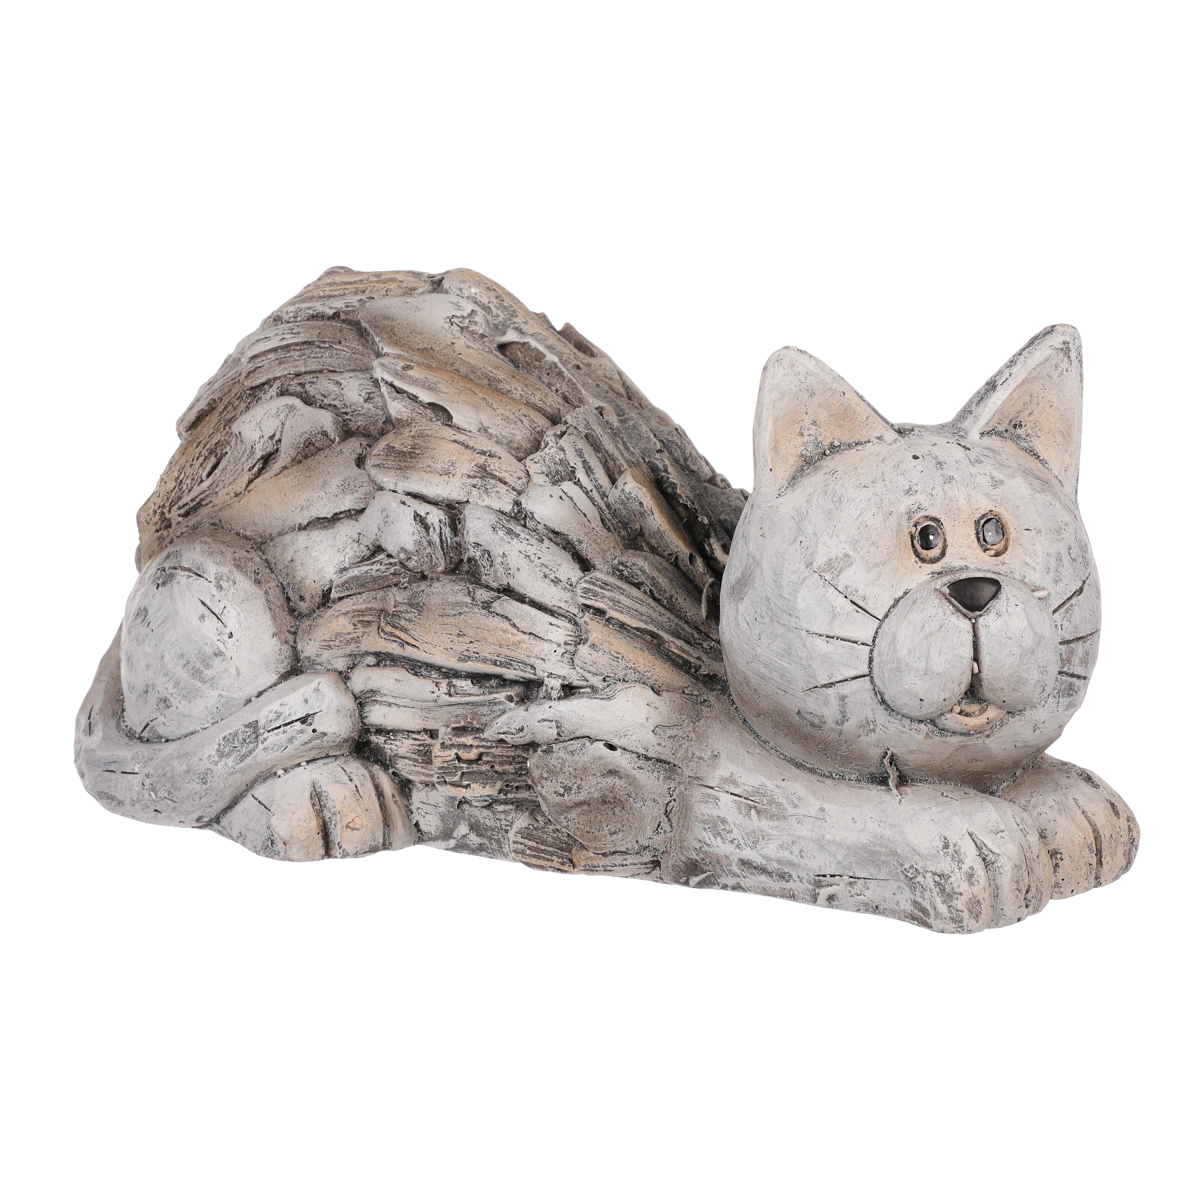 Kočka z magneziové keramiky, zahradní dekorace.